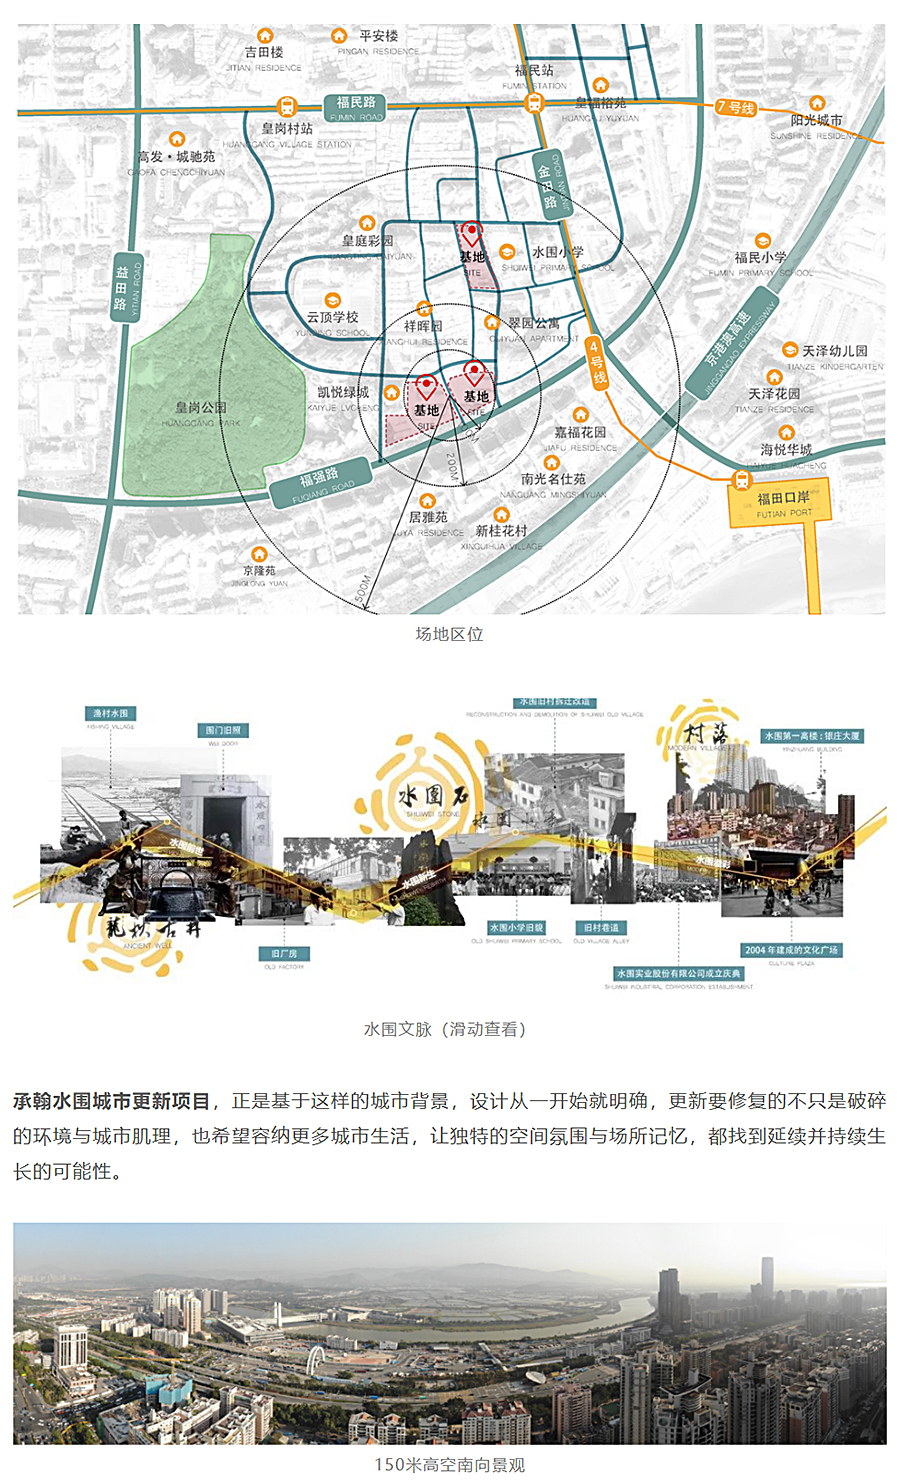 跨越600年的未来城市剧场｜承翰水围城市更新项目_0001_图层-2 拷贝.jpg